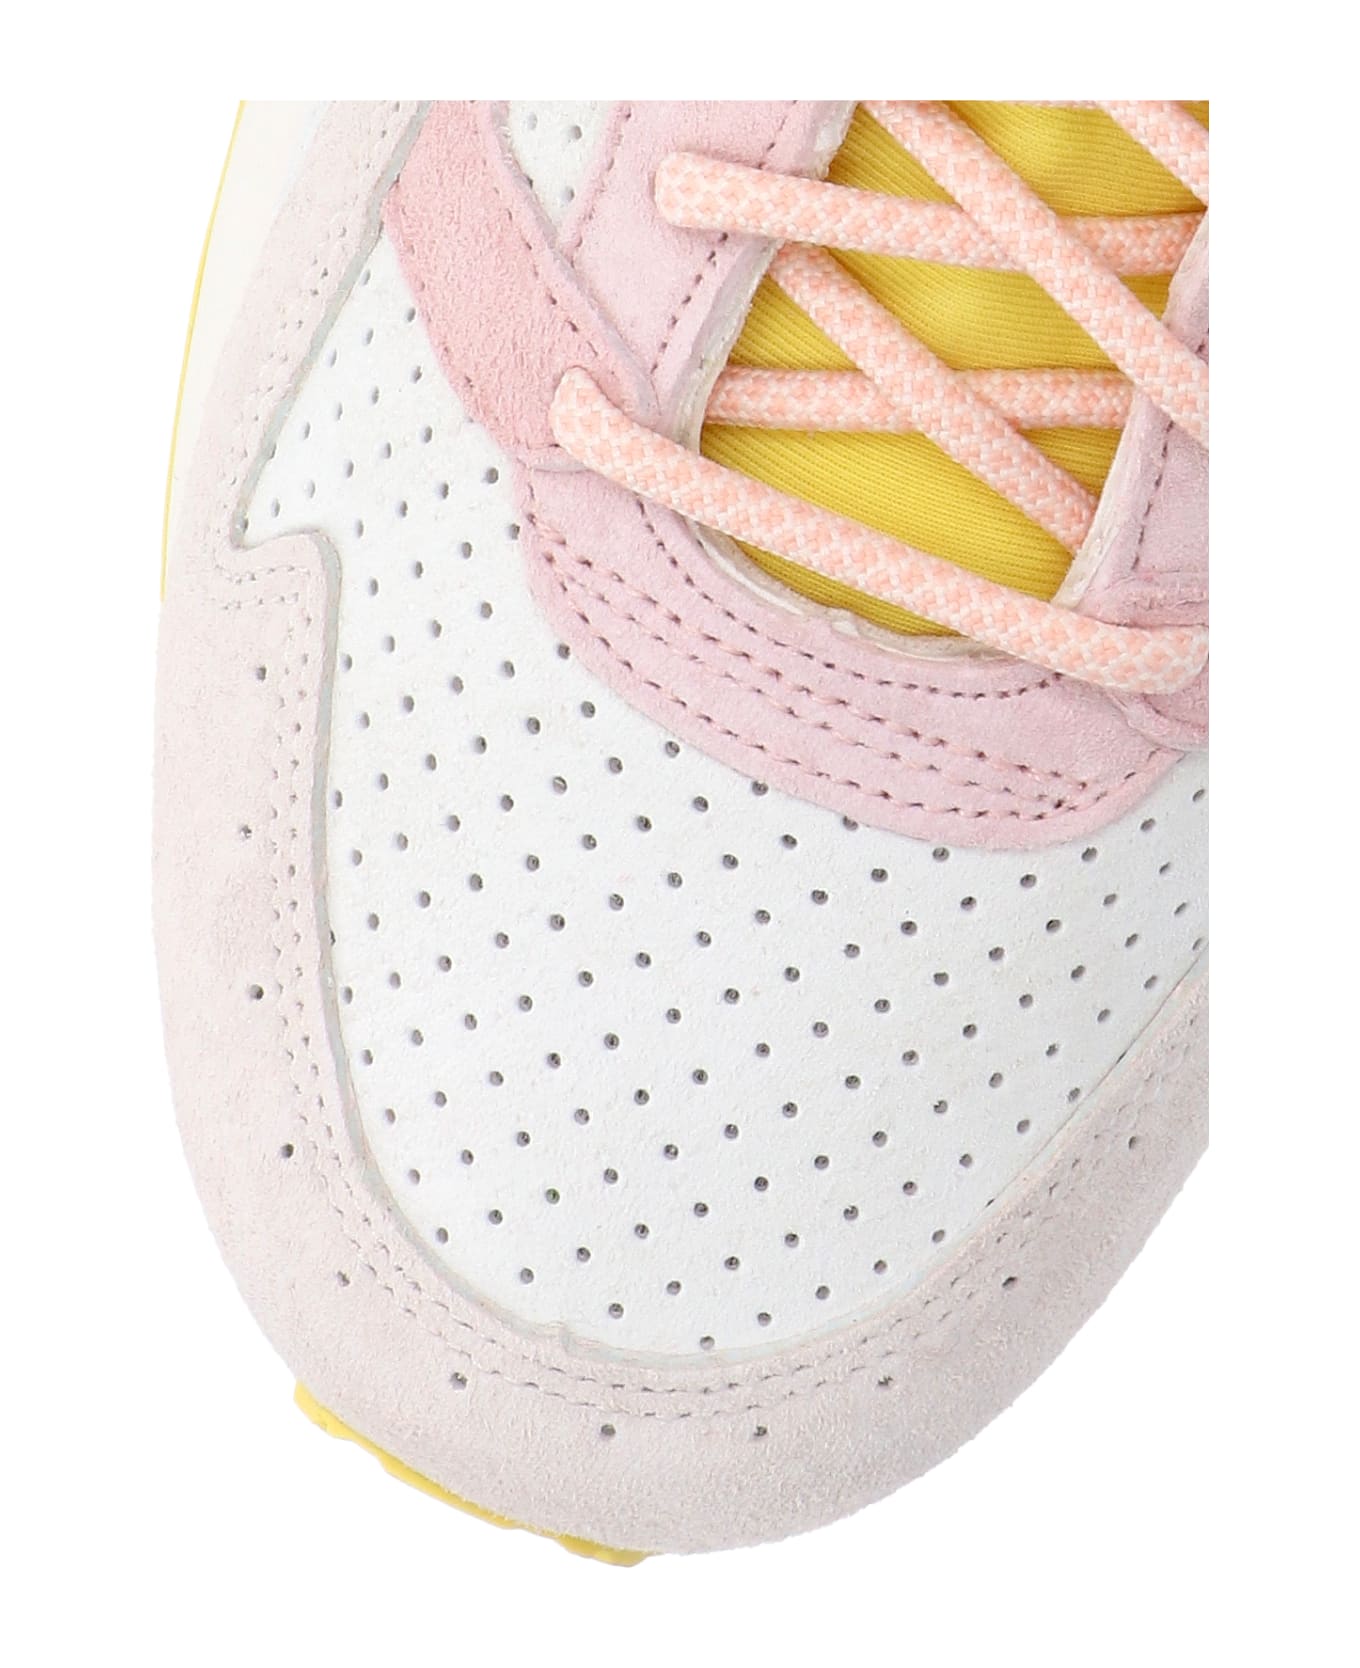 Asics 'gel-lyte V' Sneakers - Multicolor スニーカー